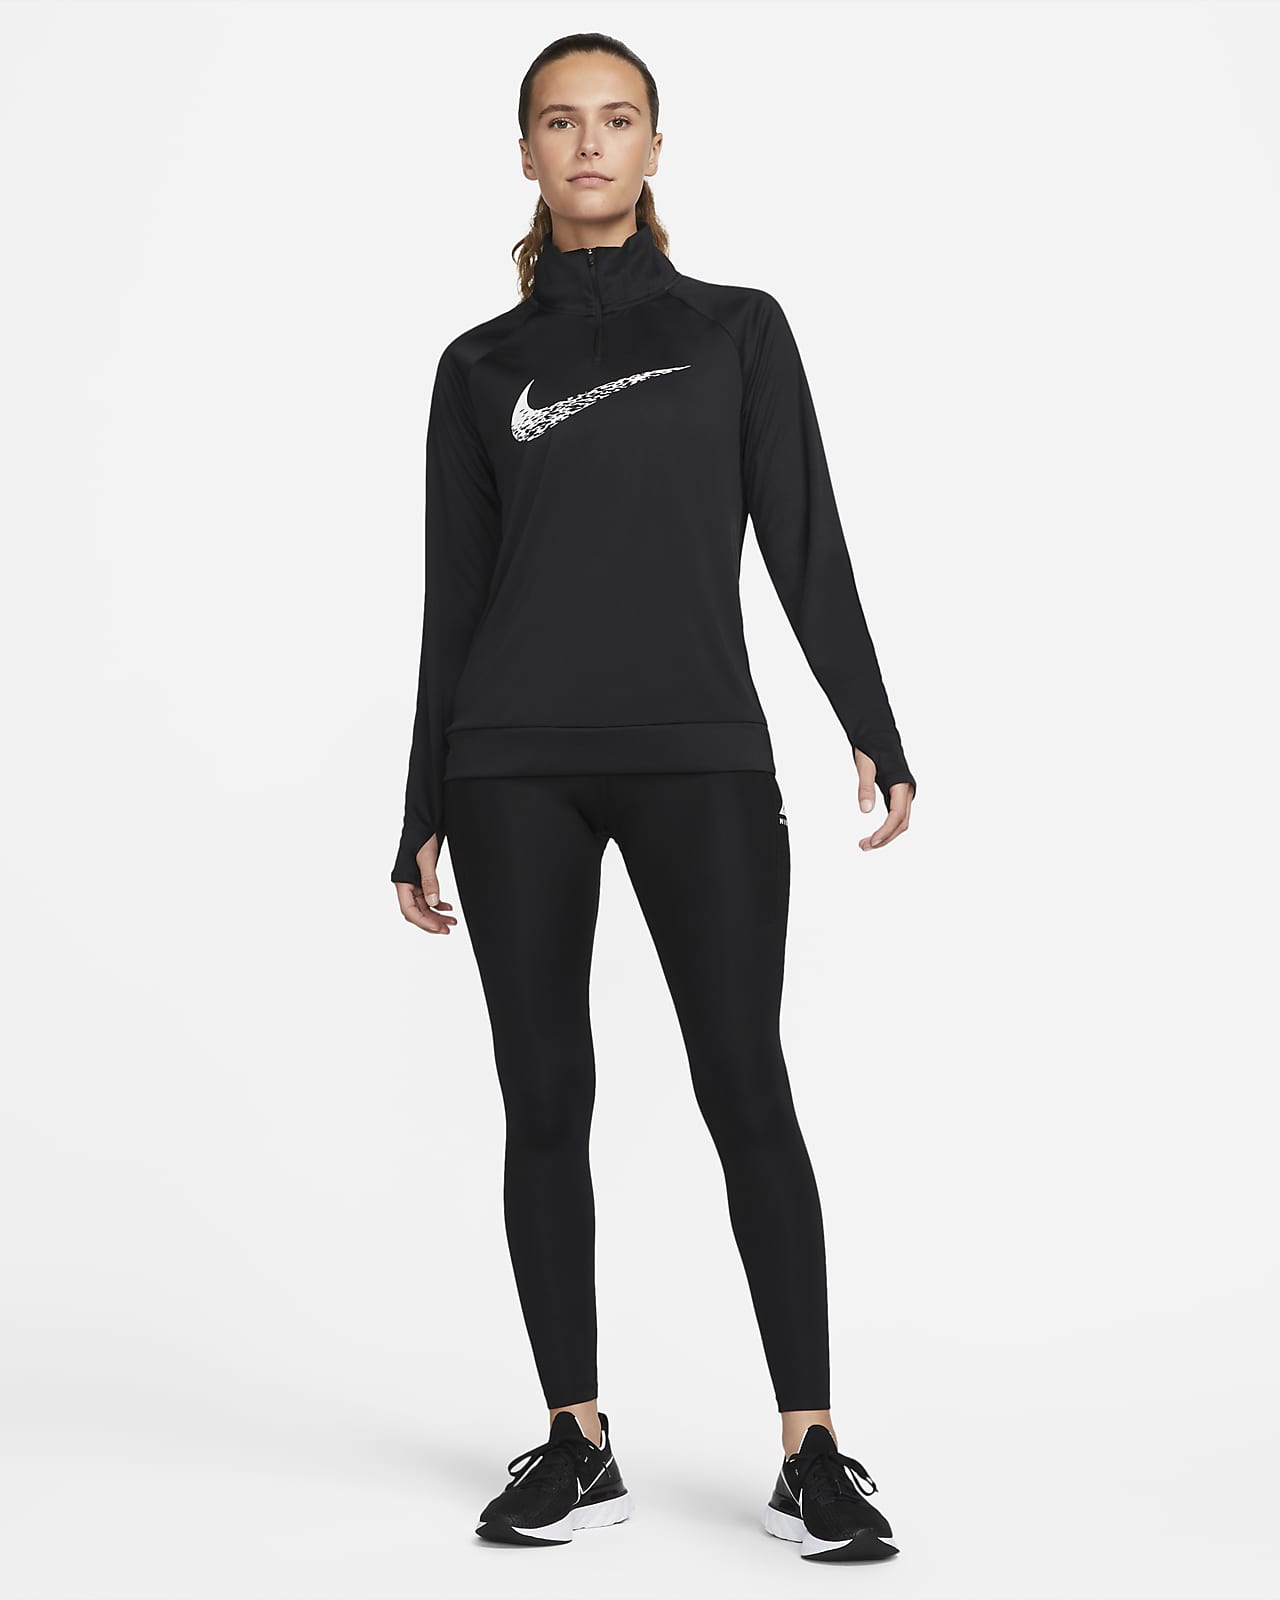 Nike sz XS Women's Dri FIT Legend 2.0 SLIM Fit Capris NEW $65